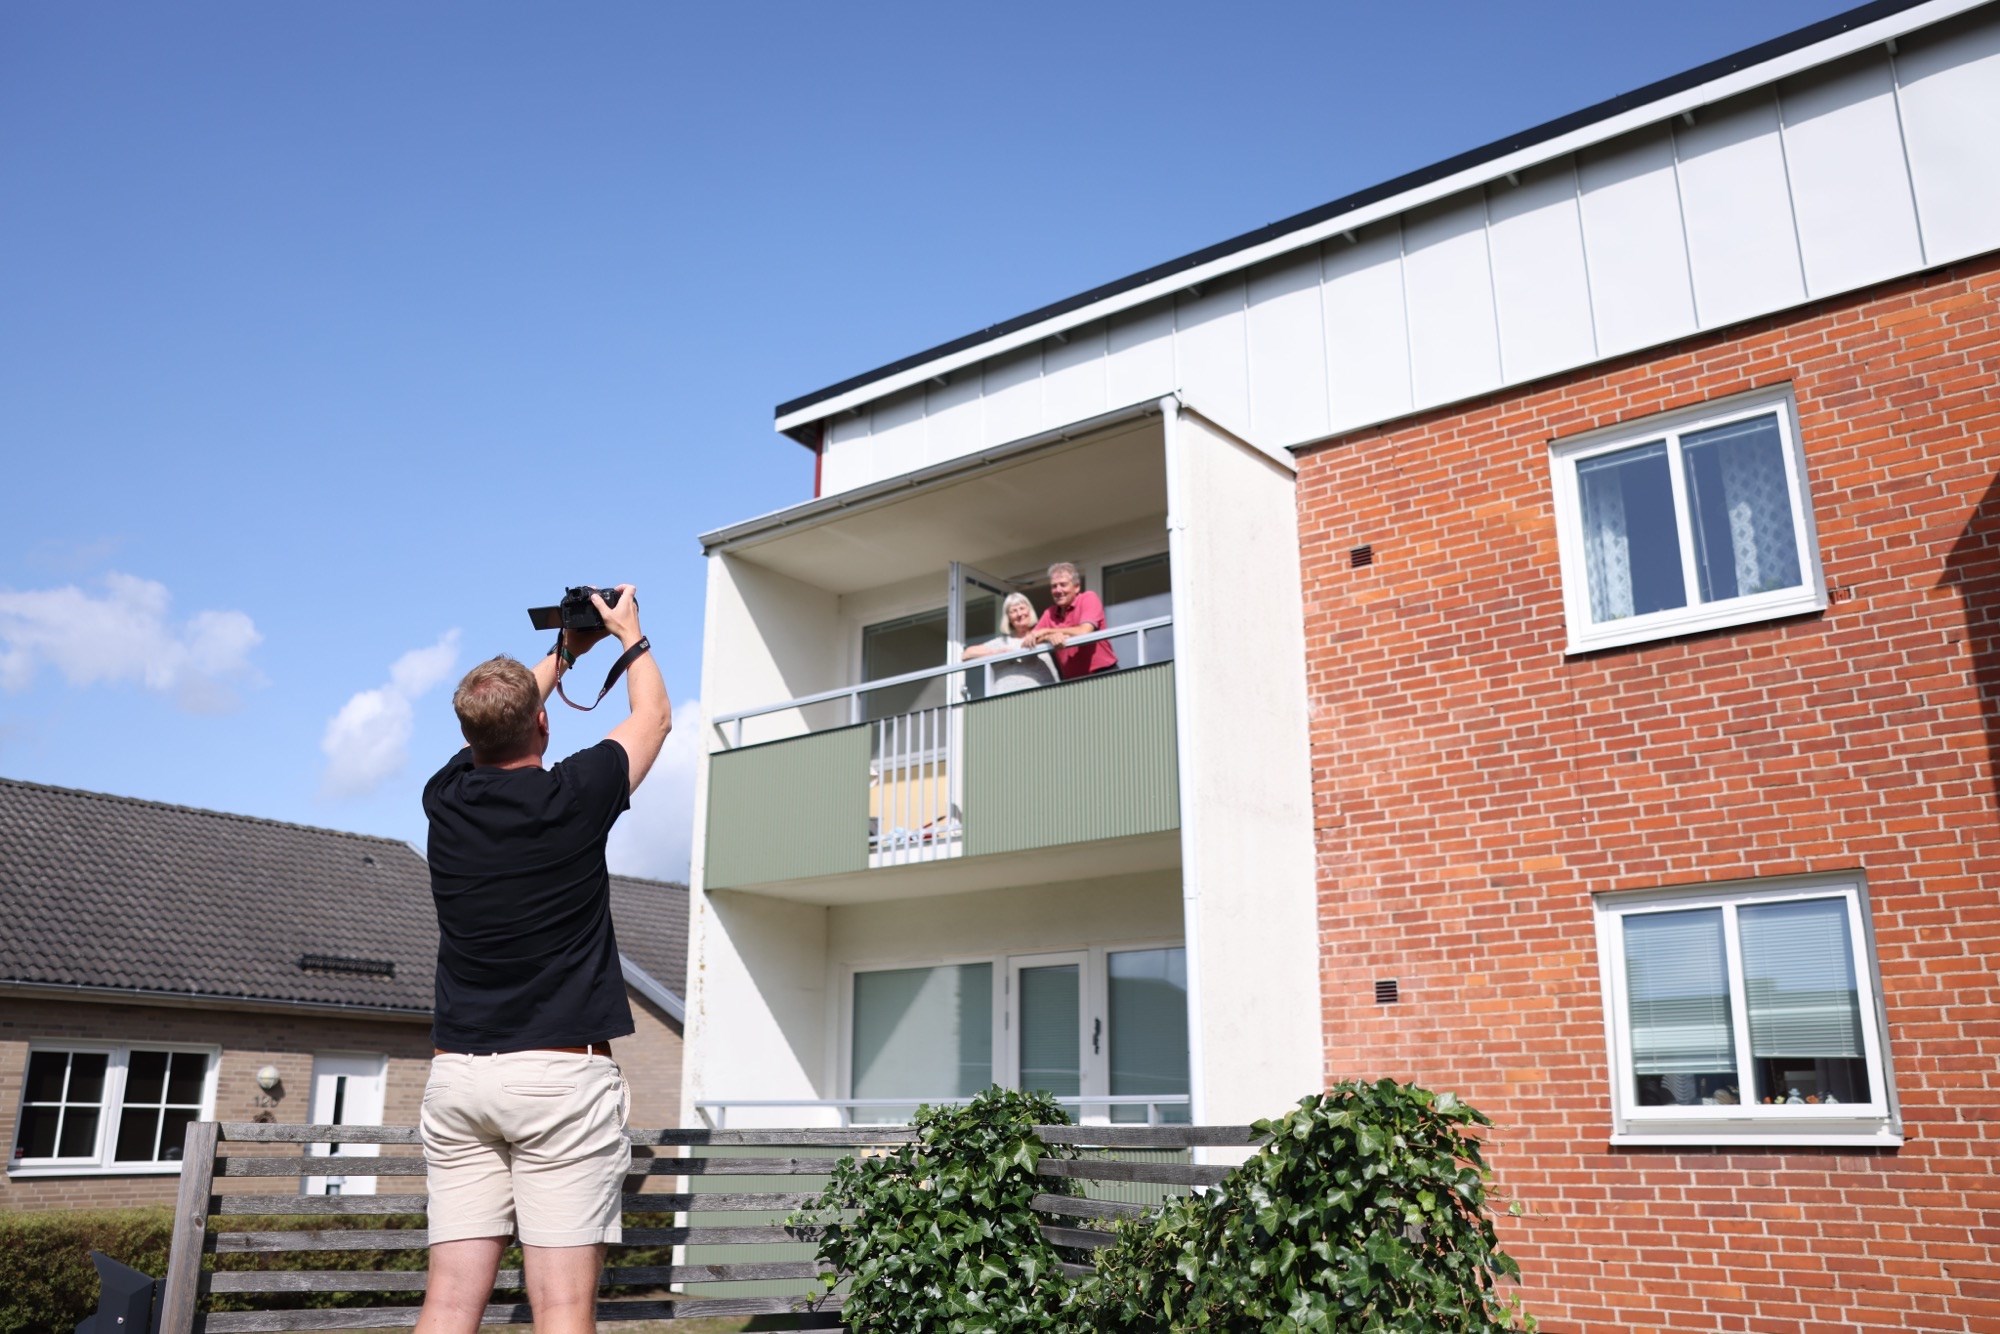 En kille står och fotograferar en man och en kvinna som står uppe på en balkong